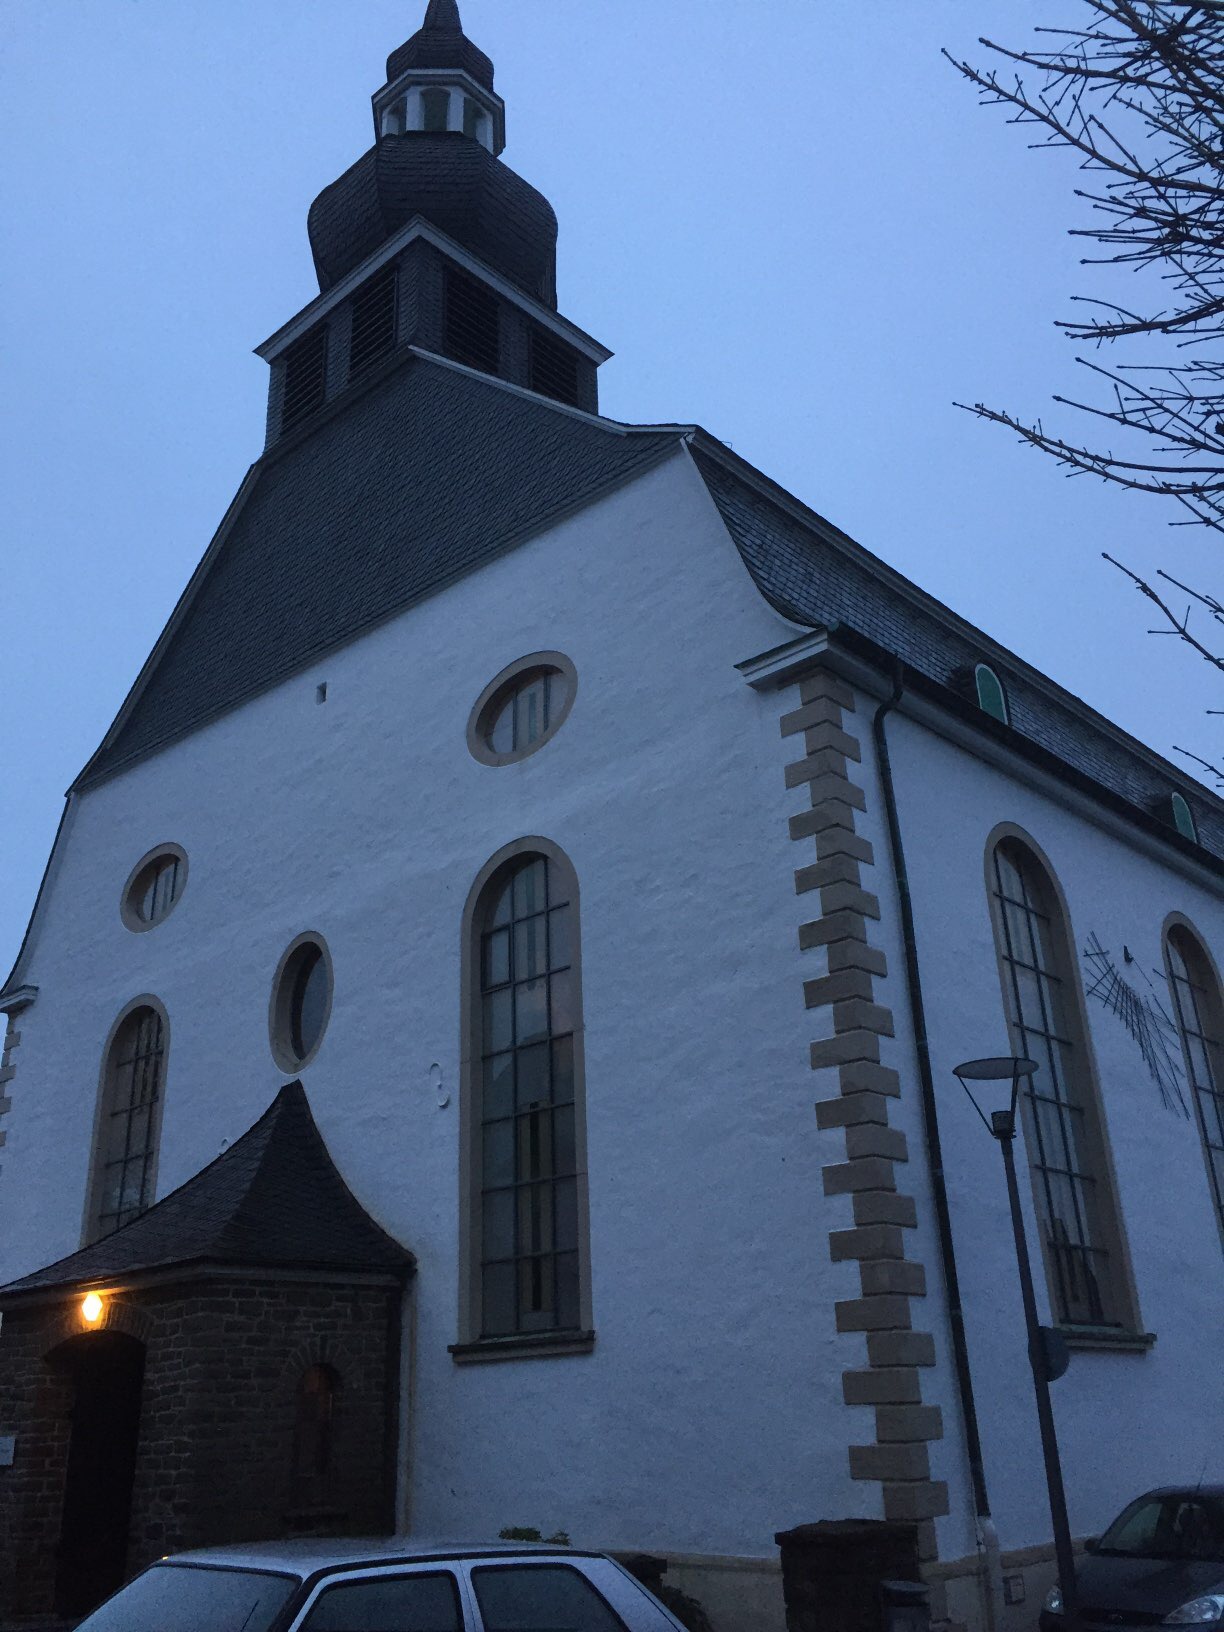 Bild 1 Evangelische-luth. Kirchengemeinde Radevormwald in Radevormwald